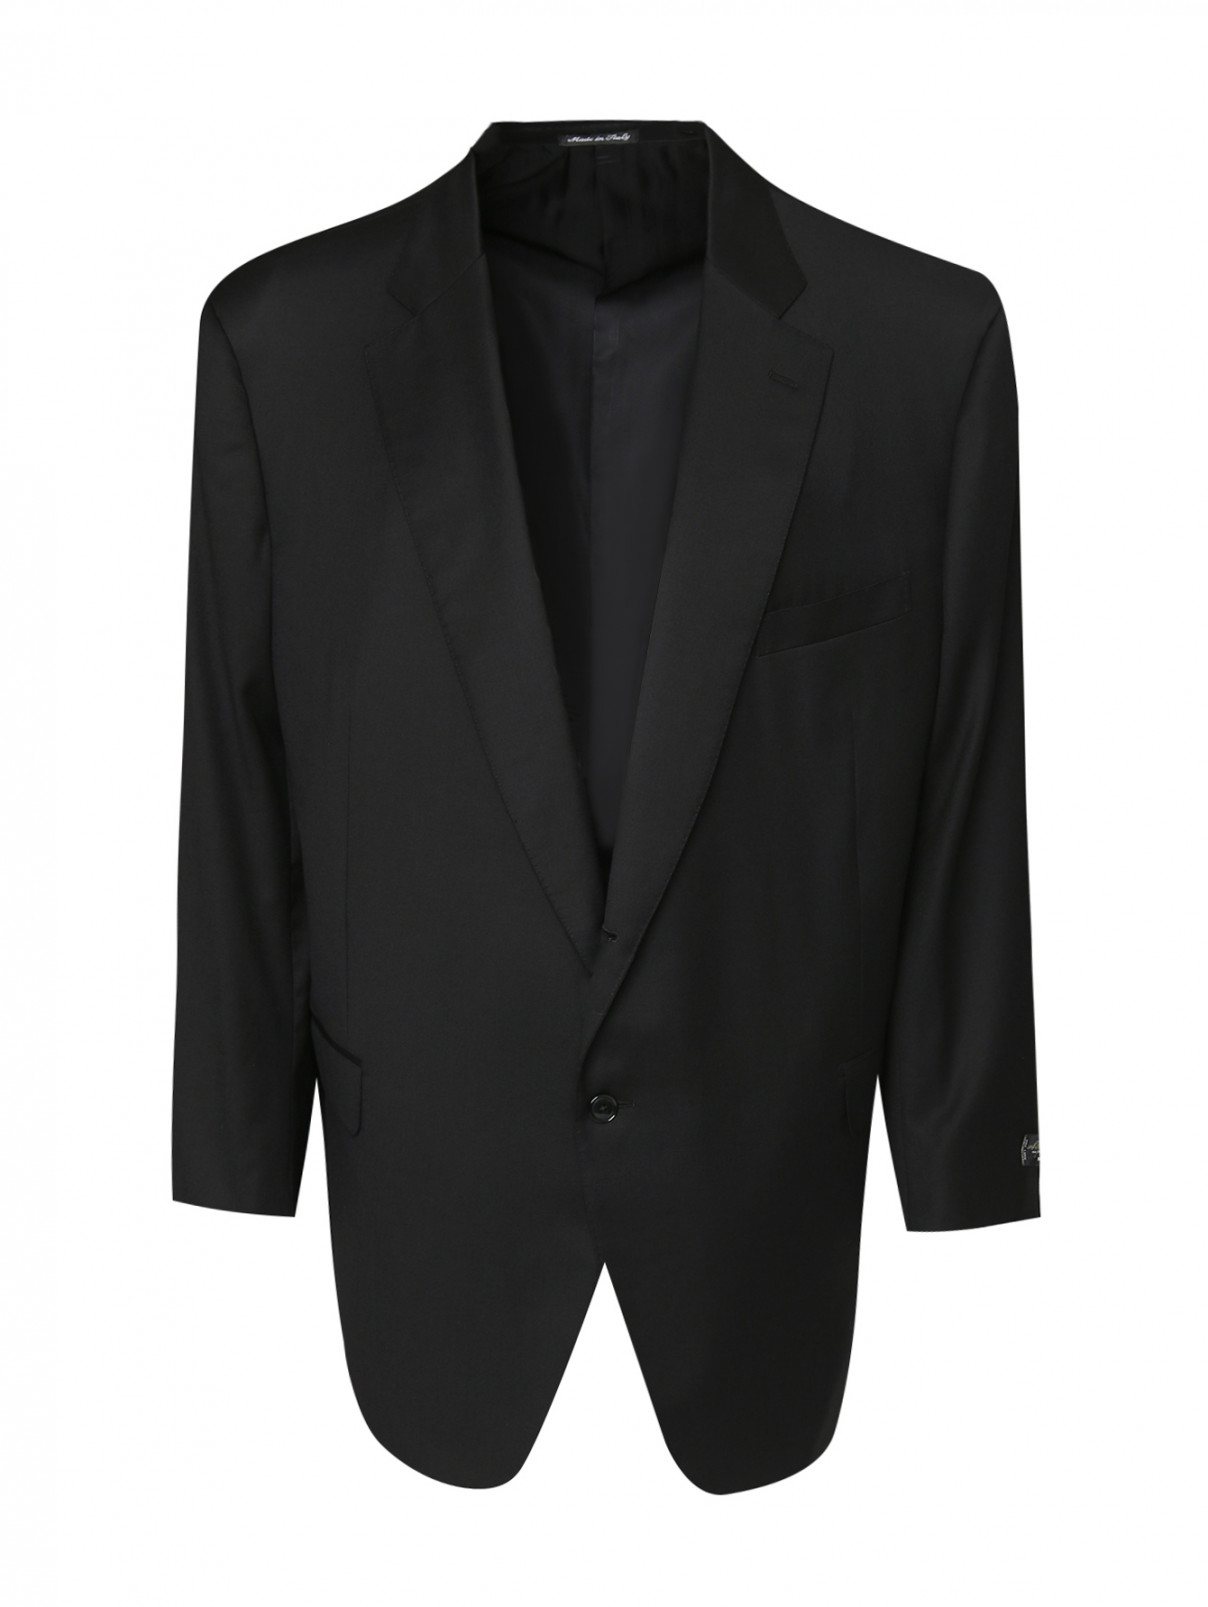 Пиджак из шерсти Pal Zileri  –  Общий вид  – Цвет:  Черный